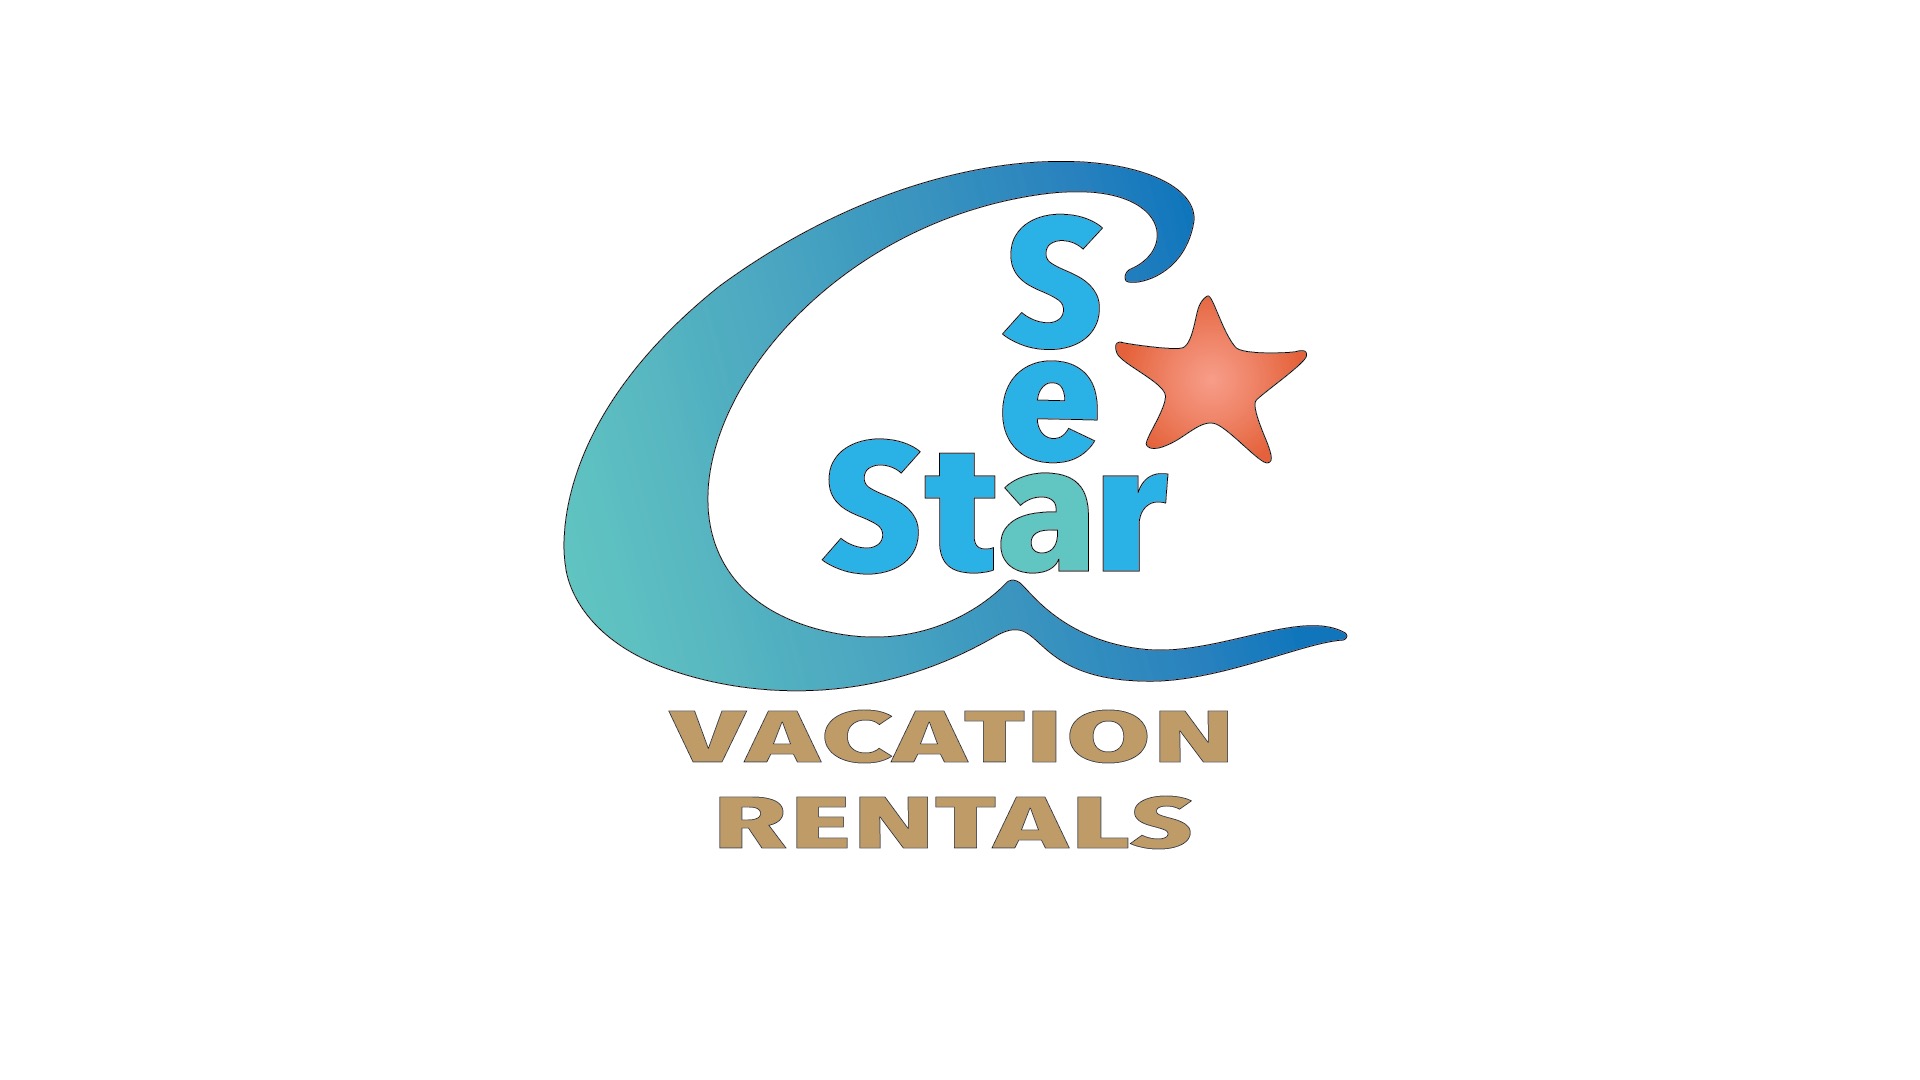 Sea Star Vacation Rentals logo